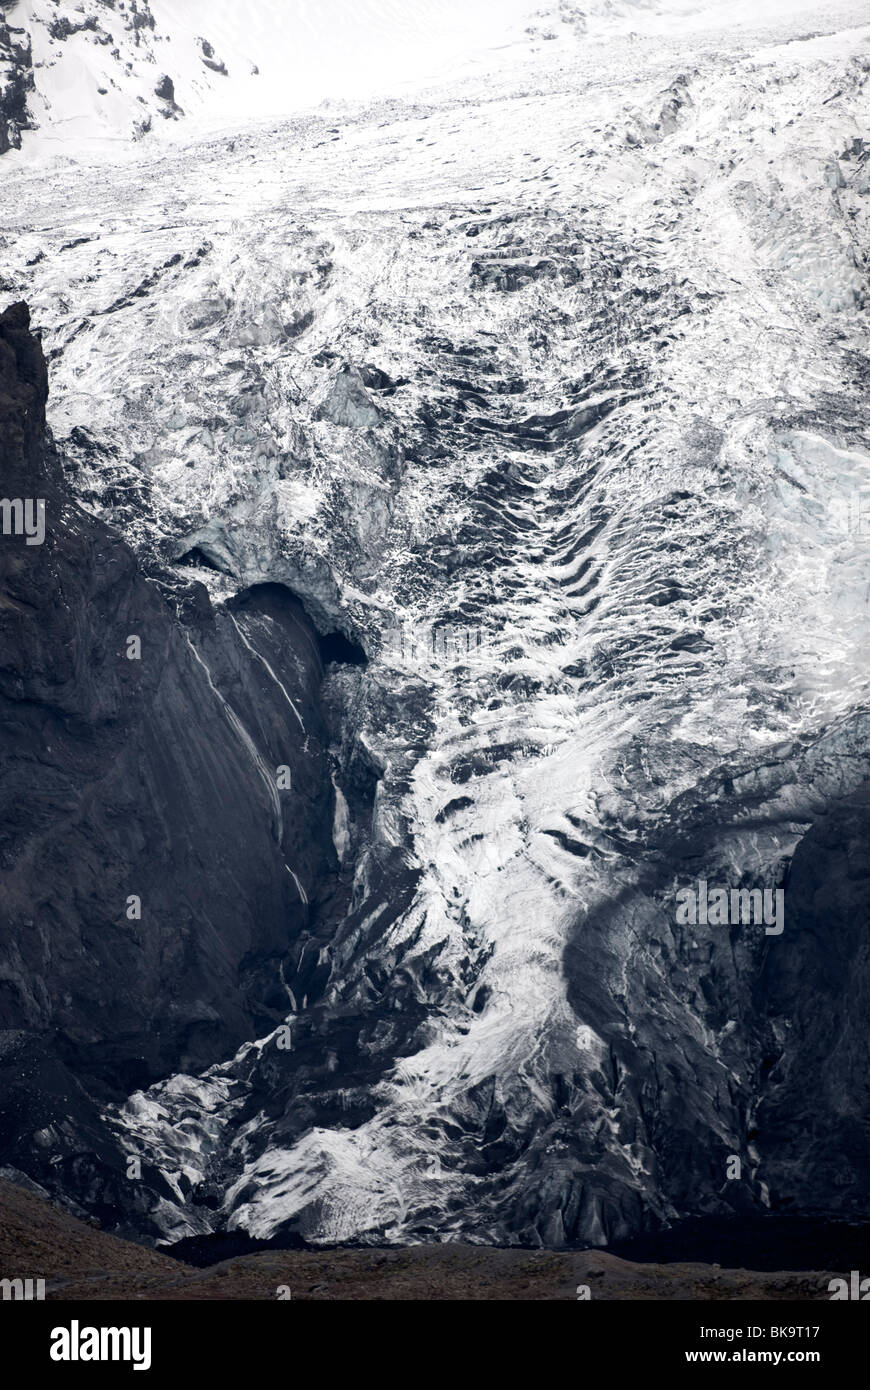 Gigjokull im Eyjafjallajökull, der Gletscher nach der Flut, die unter dem Eis in den Vulkanausbruch kam Stockfoto